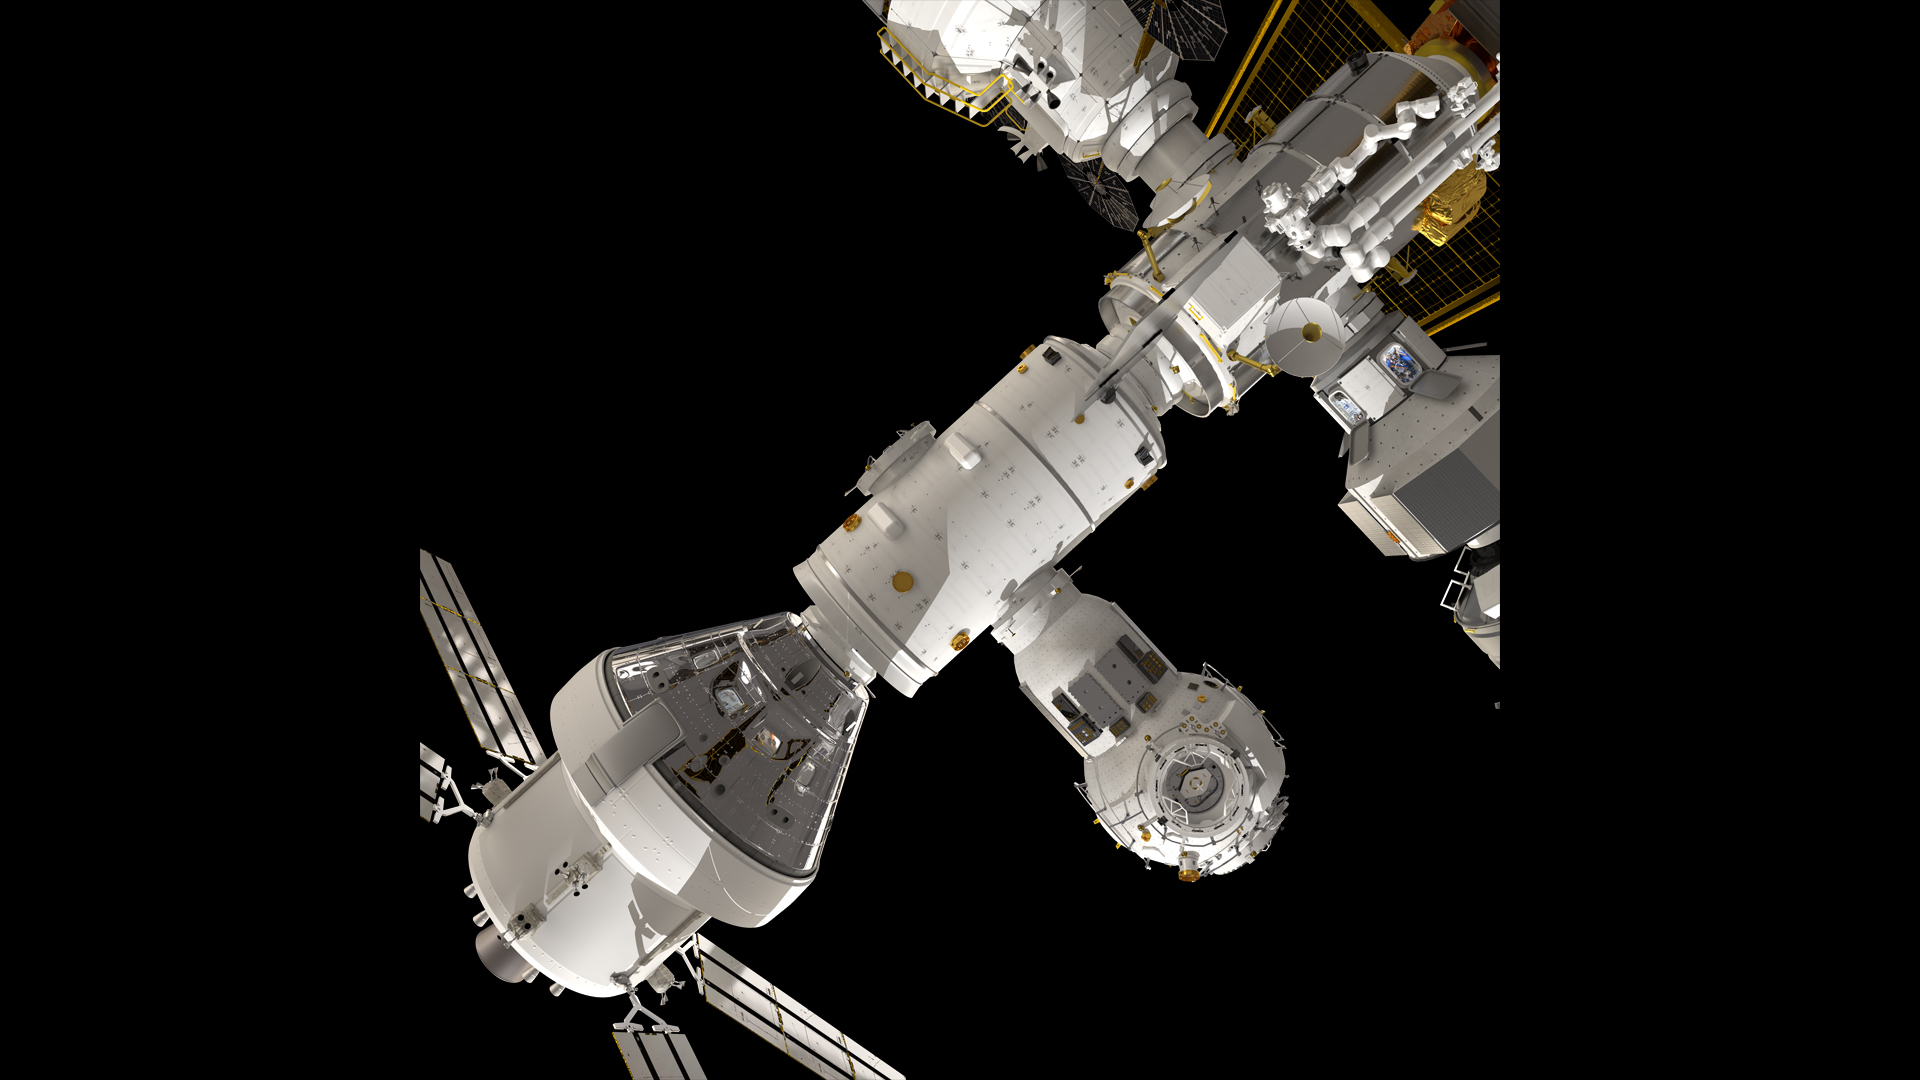 Una nave espacial Orion acoplada al portal de la estación espacial en la ilustración del artista.  Portal tiene muchos módulos, algo así como la Estación Espacial Internacional pero más pequeño